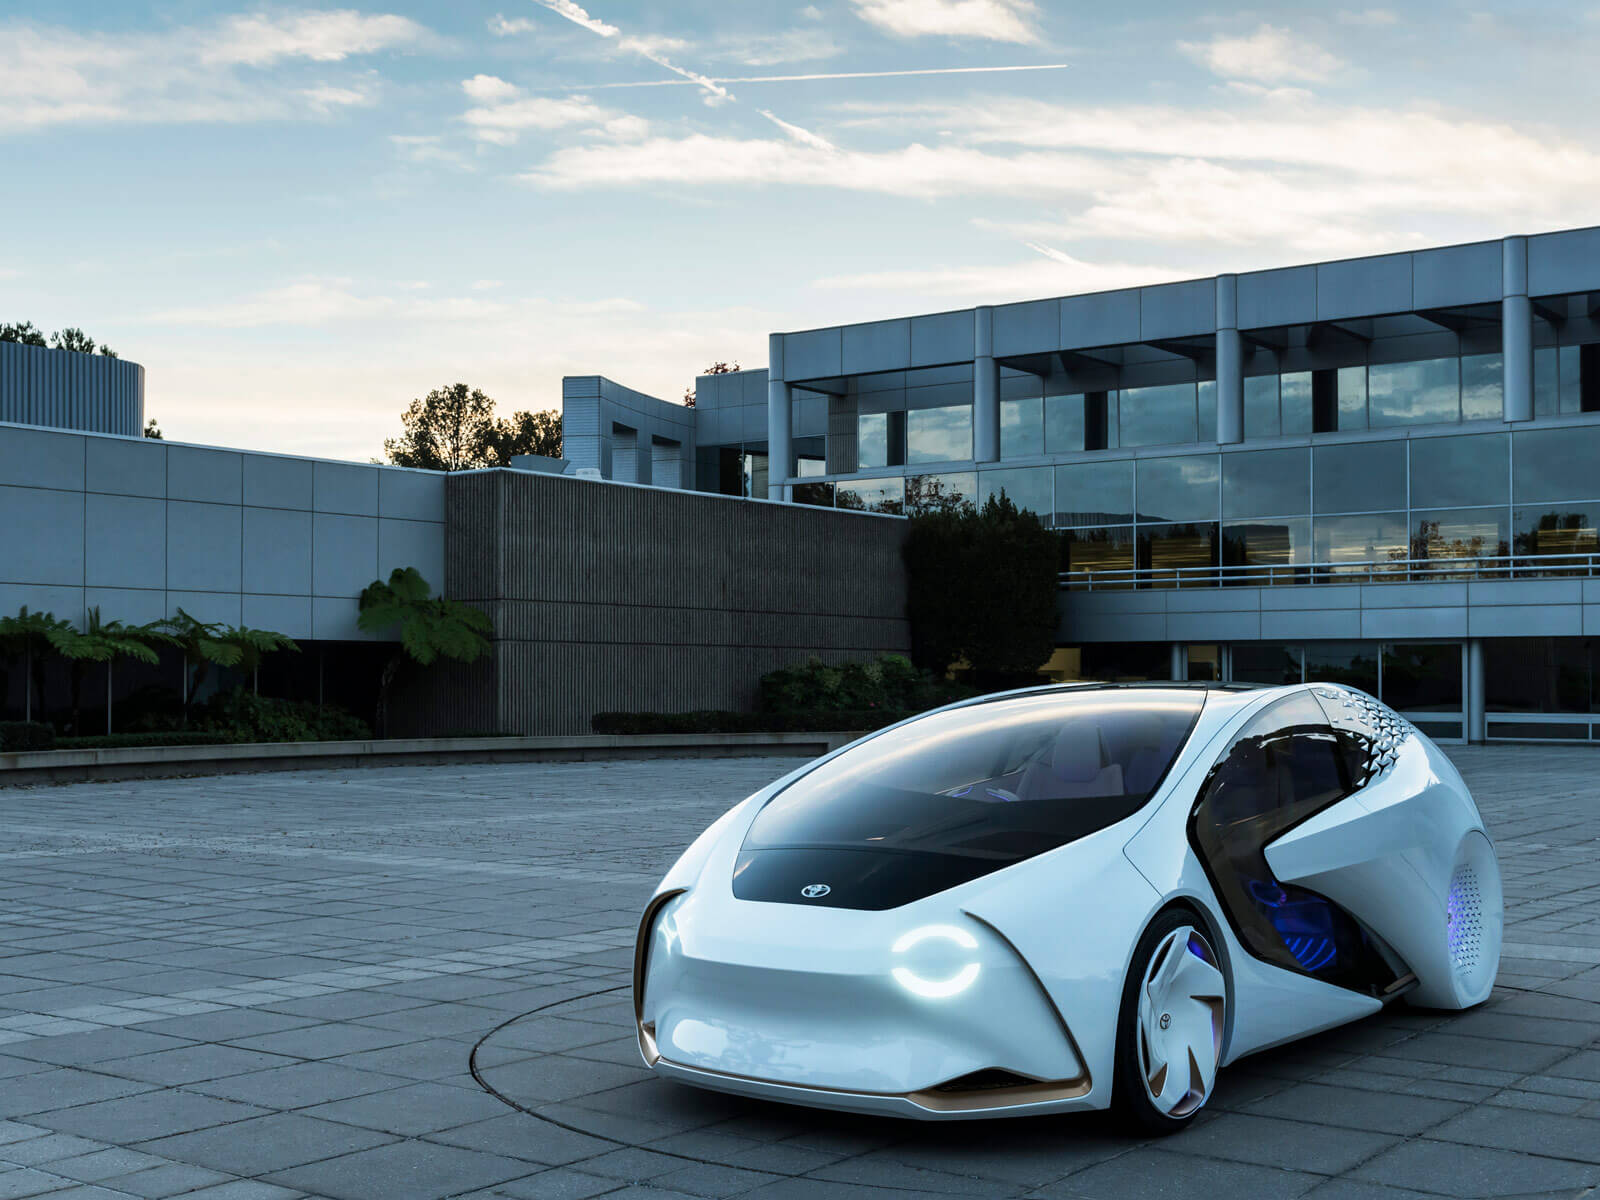 La nueva apuesta innovadora de Toyota se llama Concept-i